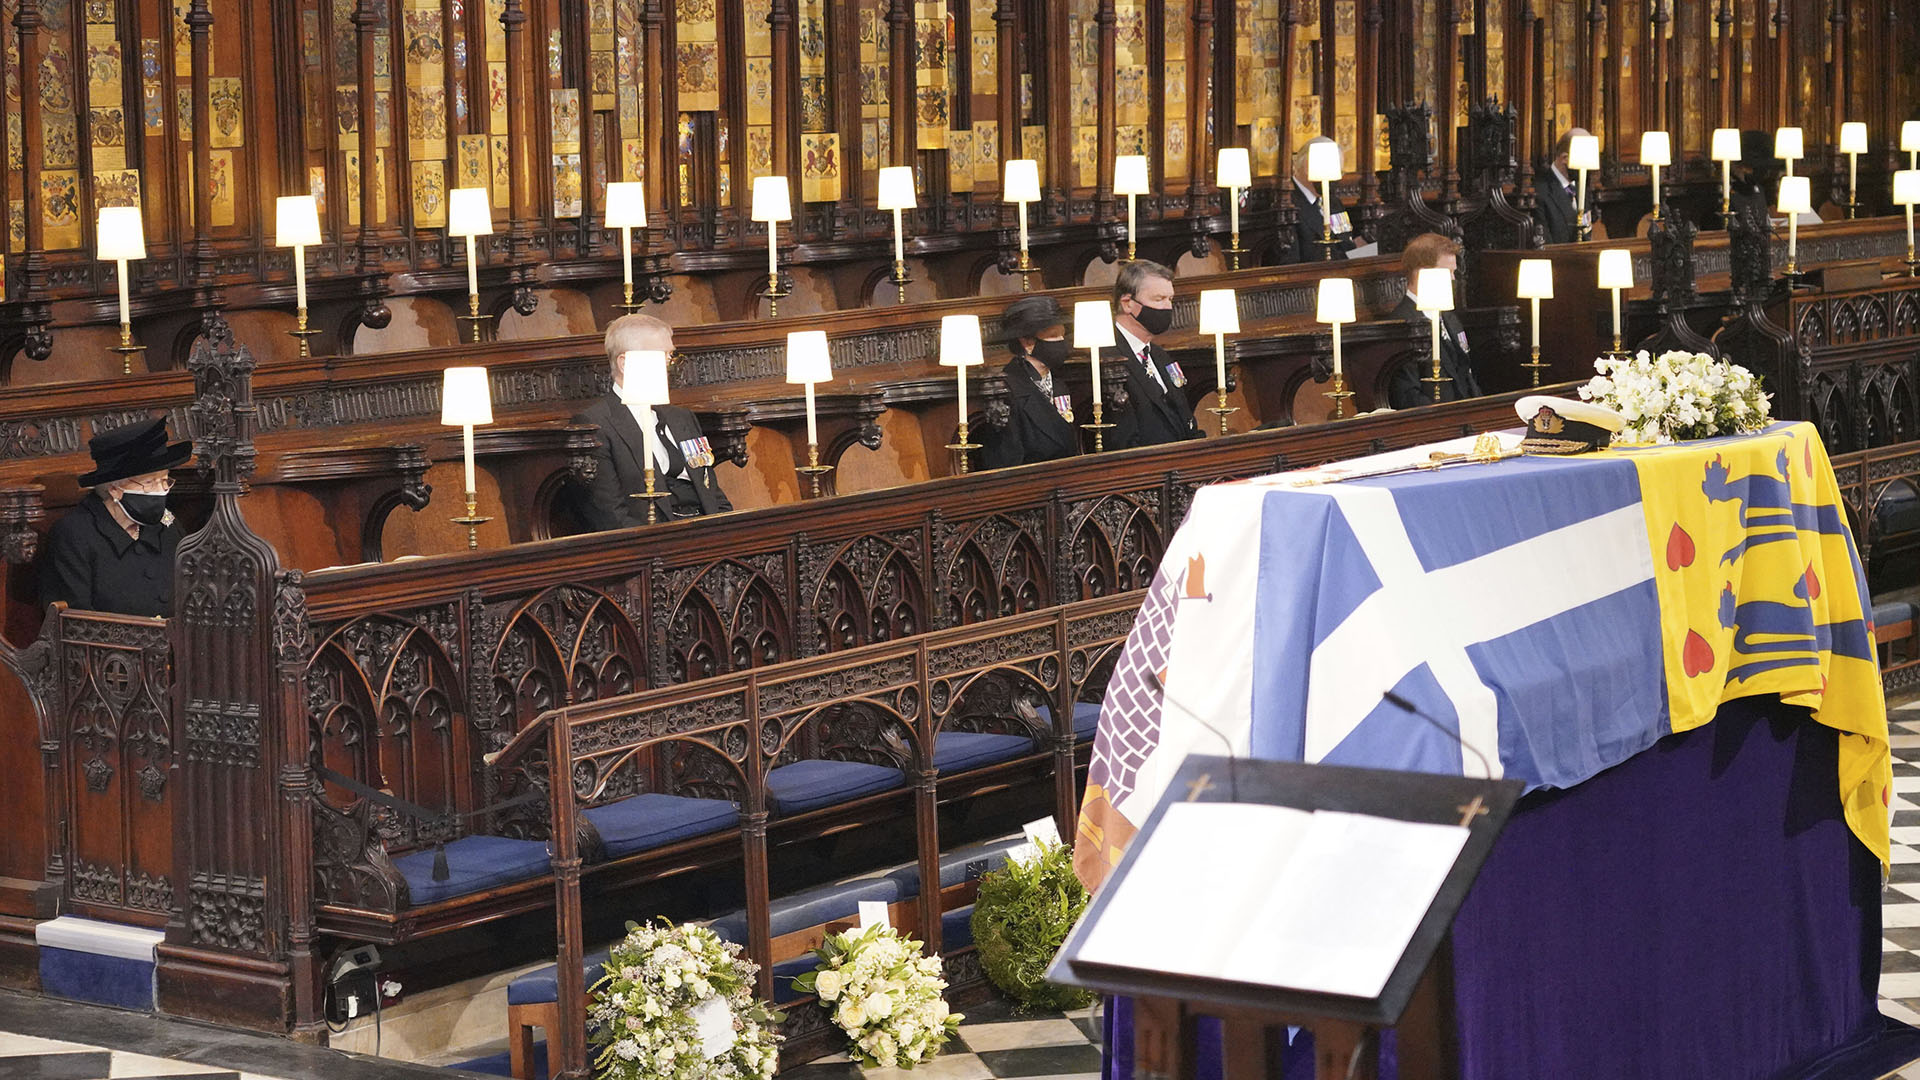 La reina Isabel II de Gran Bretaña mira el ataúd cubierto con la bandera en la capilla de San Jorge durante el funeral del príncipe Felipe, el hombre que había estado al lado su lado durante 73 años. Felipe murió el 9 de abril a la edad de 99 años (Jonathan Brady/Piscina vía AP)
